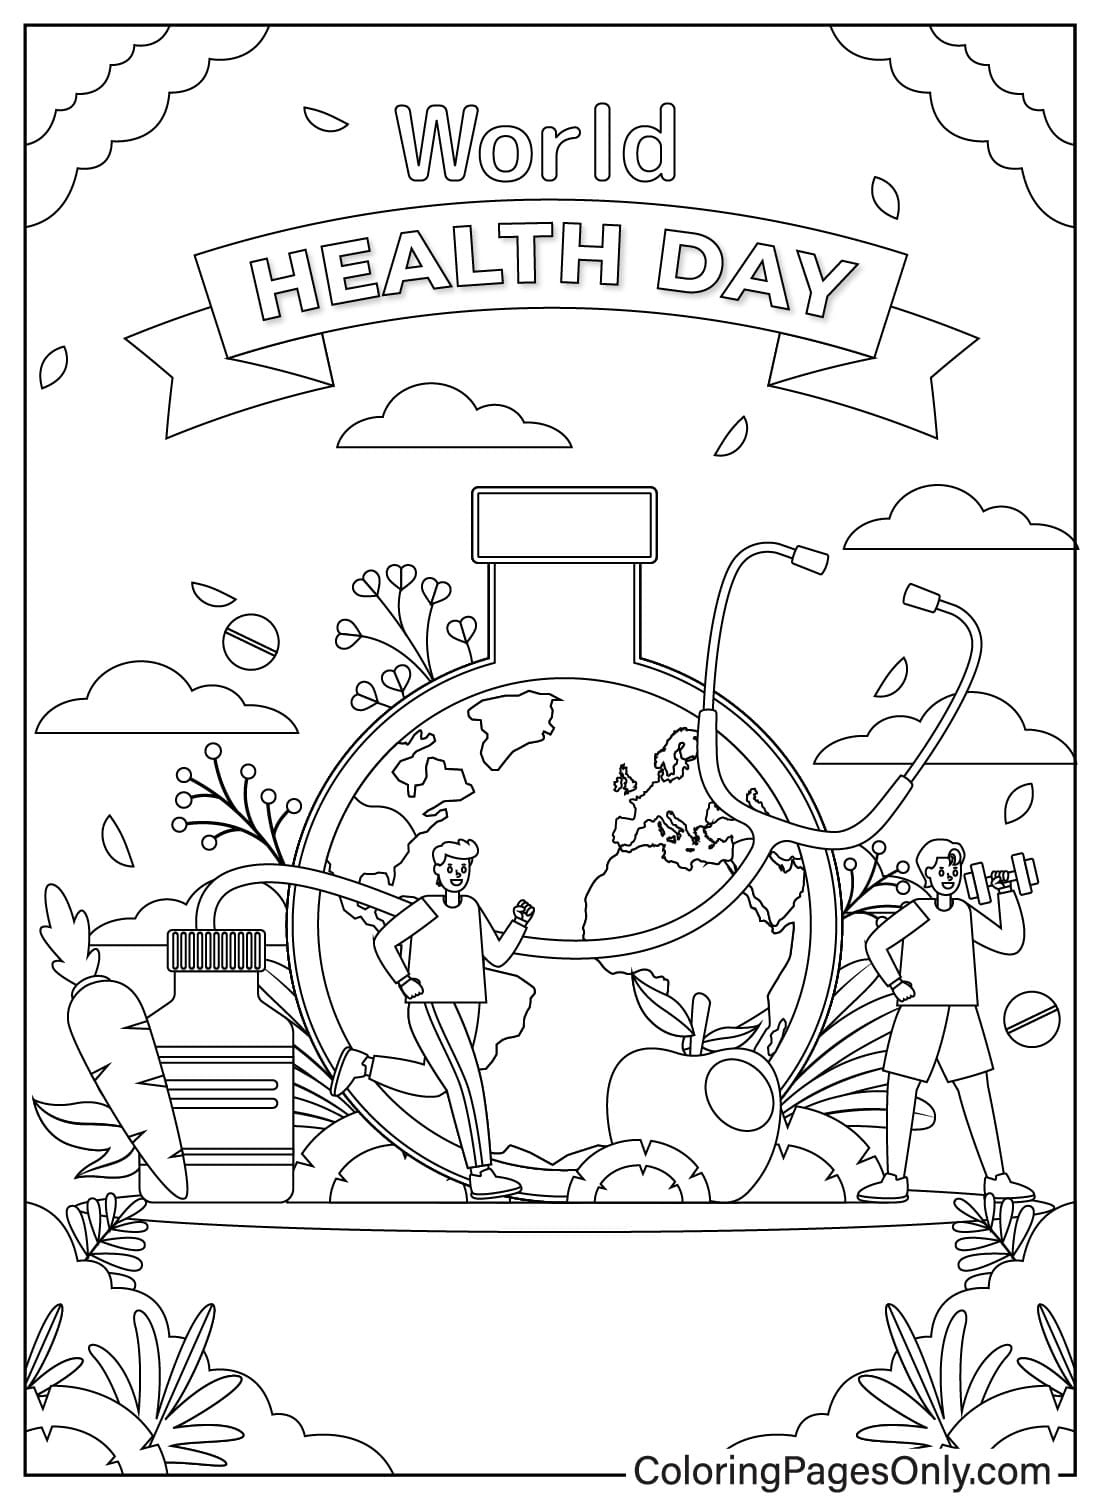 Eine Glyph-Linienillustration des Weltgesundheitstages vom Weltgesundheitstag